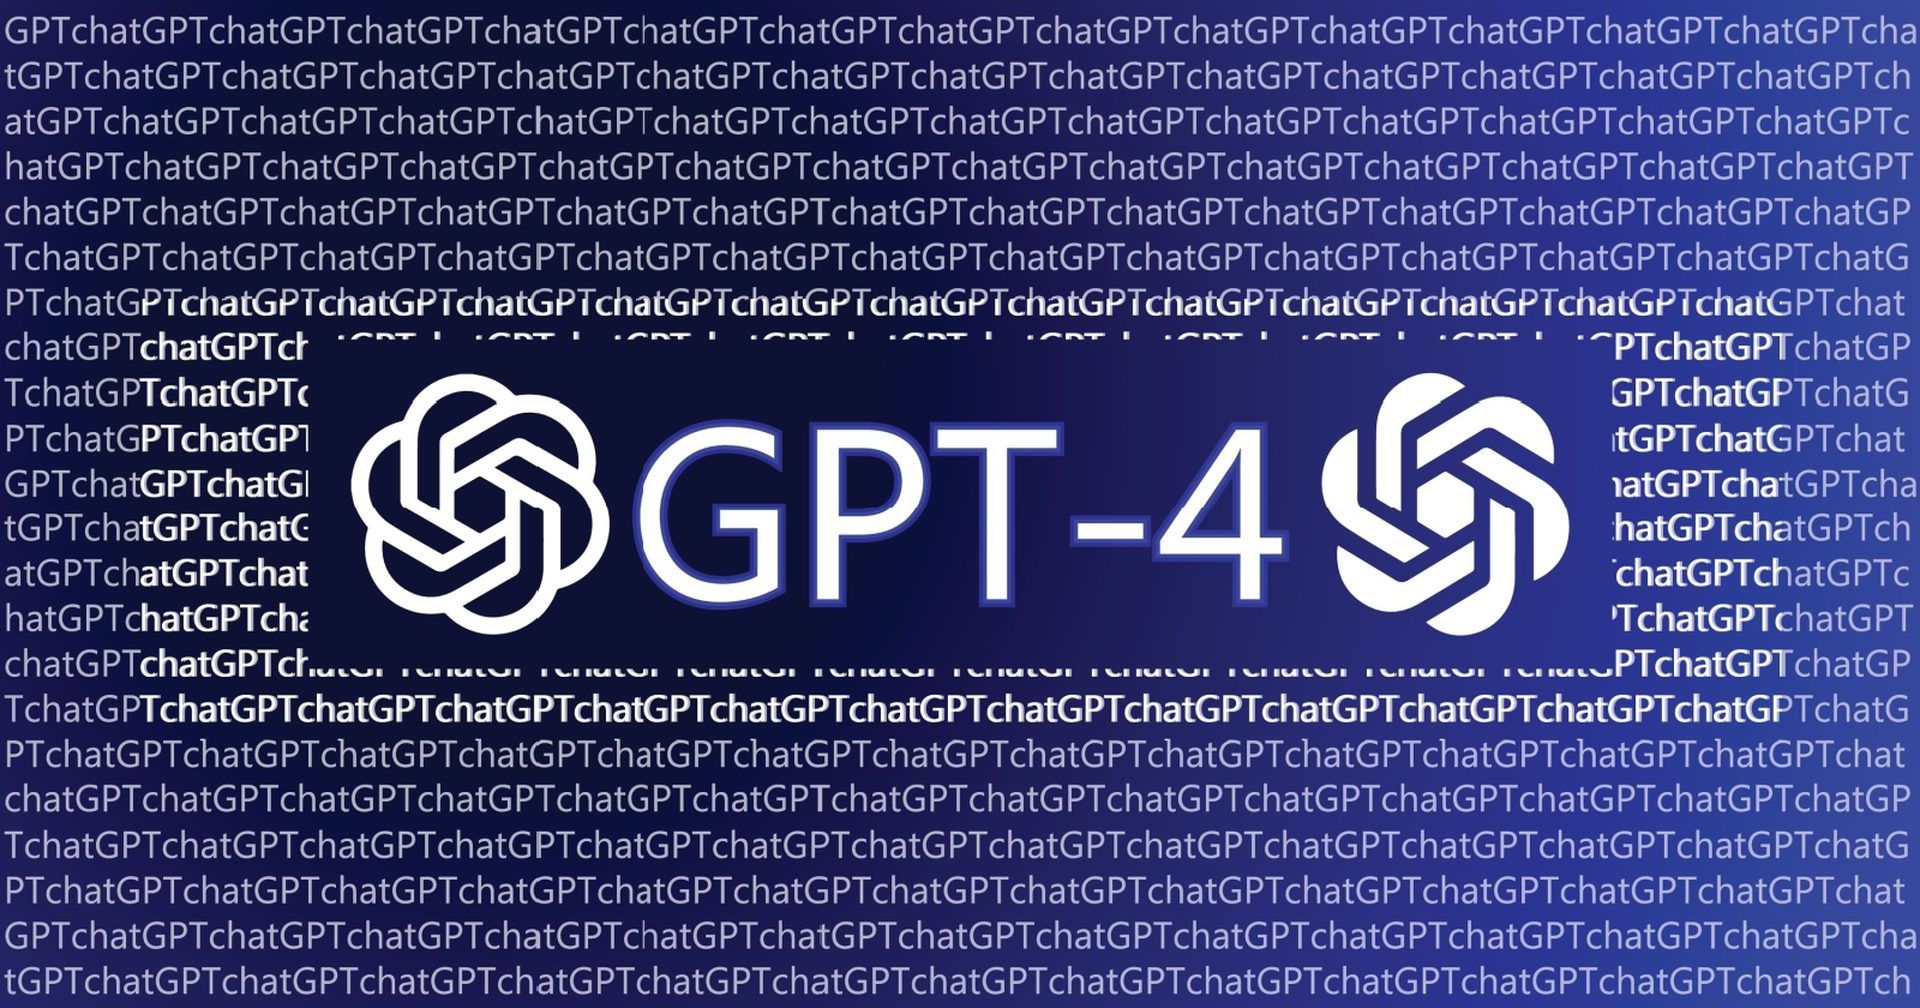 Как присоединиться к списку ожидания API GPT-4?